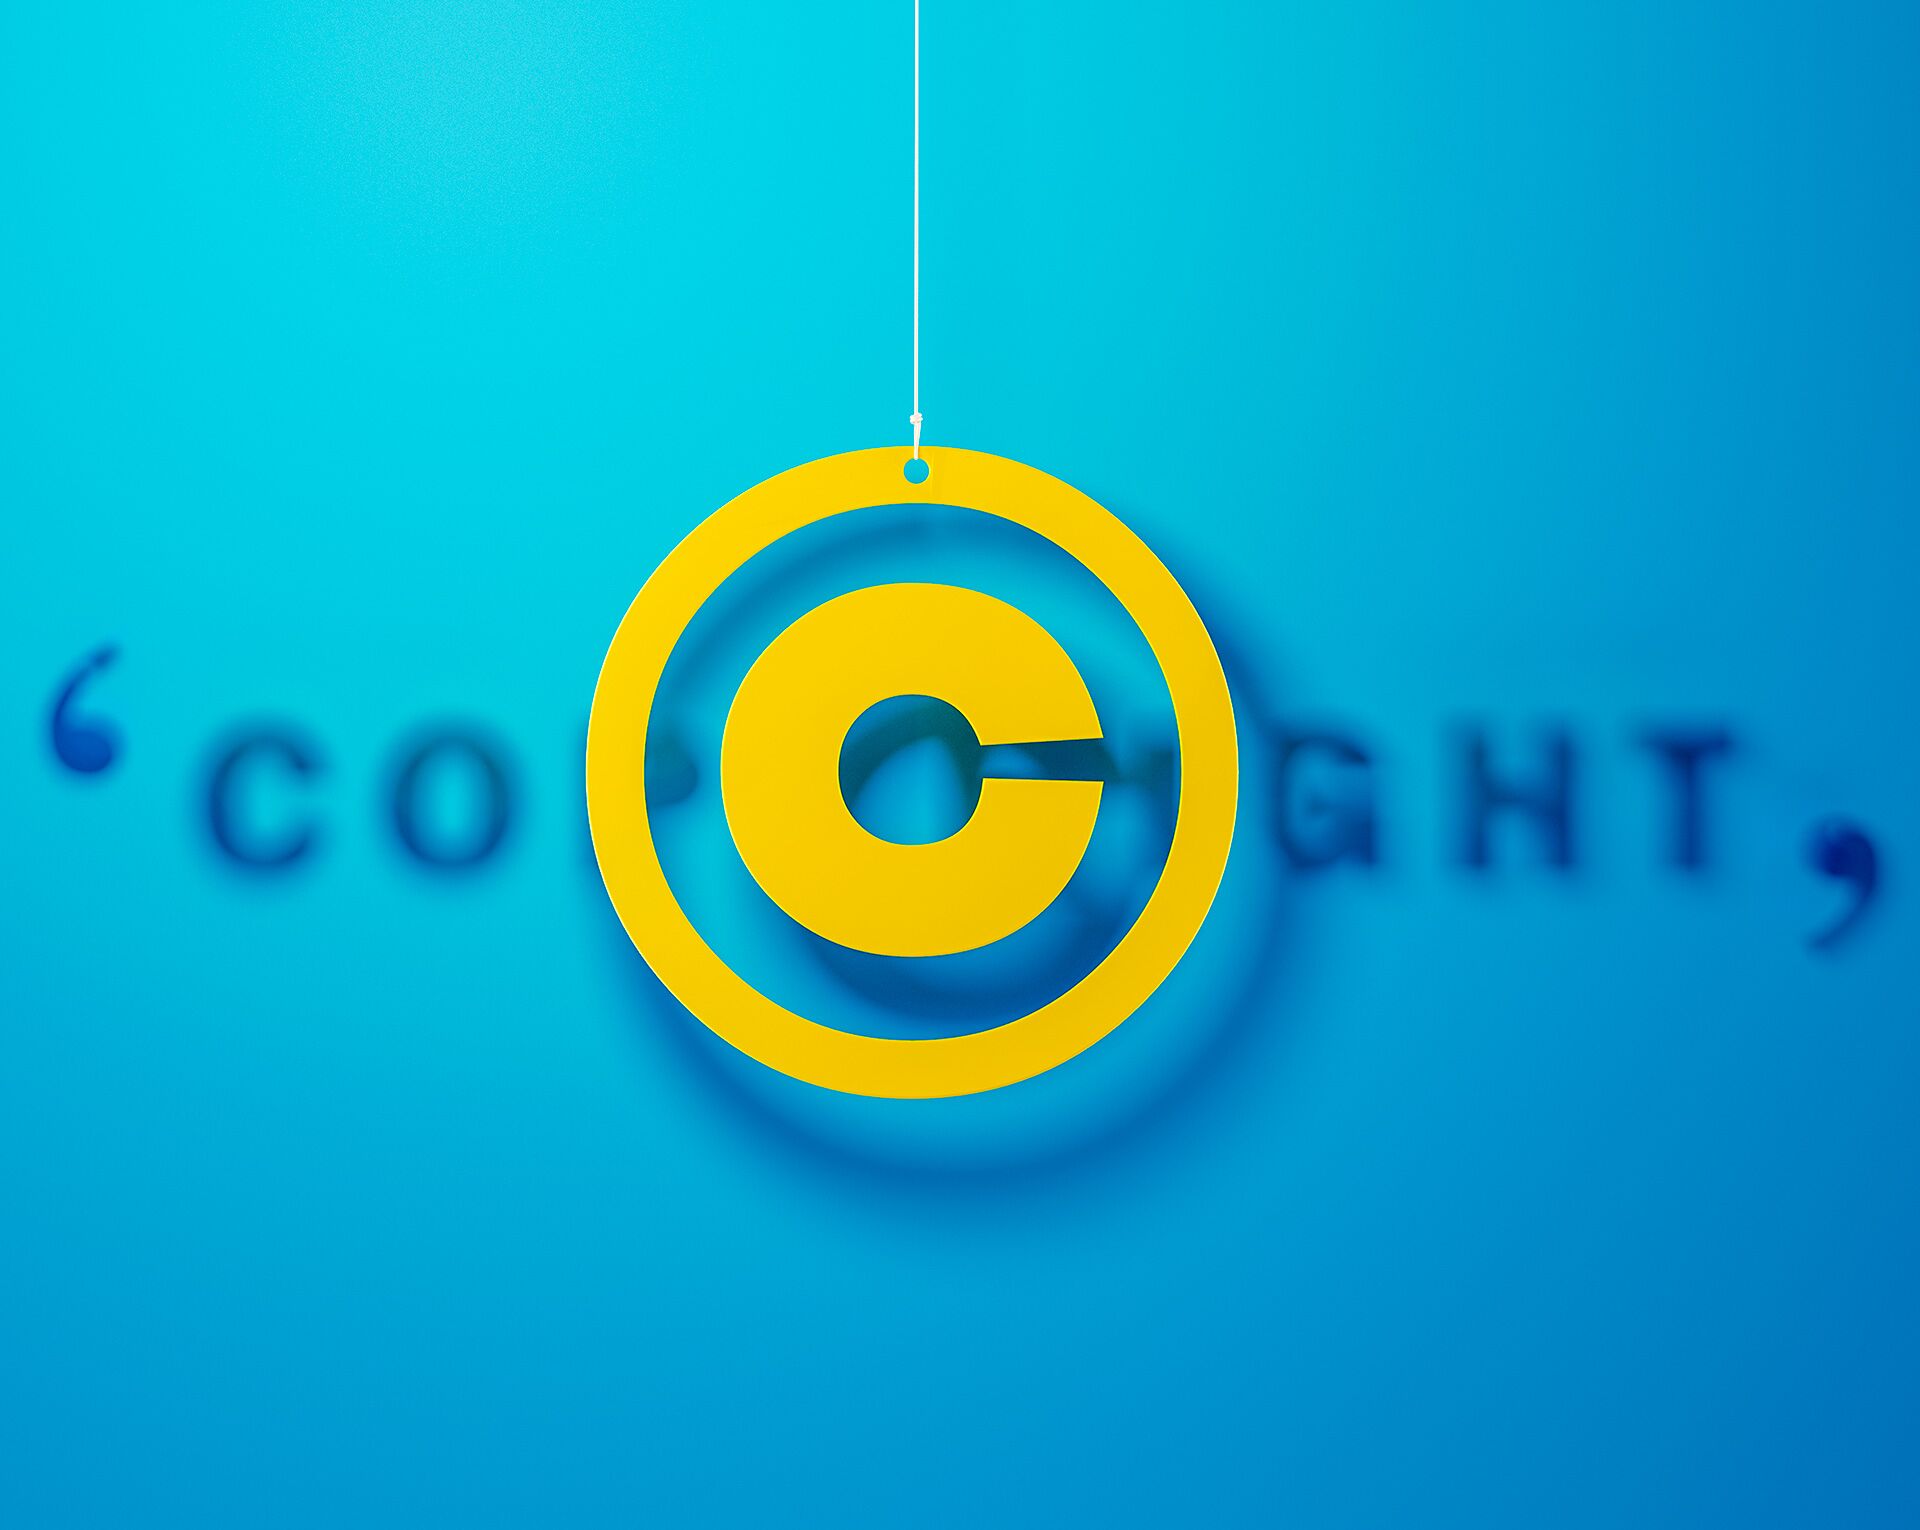 Symbolbild für Infoboxbeitrag „Marke schützen lassen”: gelbes Copyright-Symbol mit blauem Hintergrund